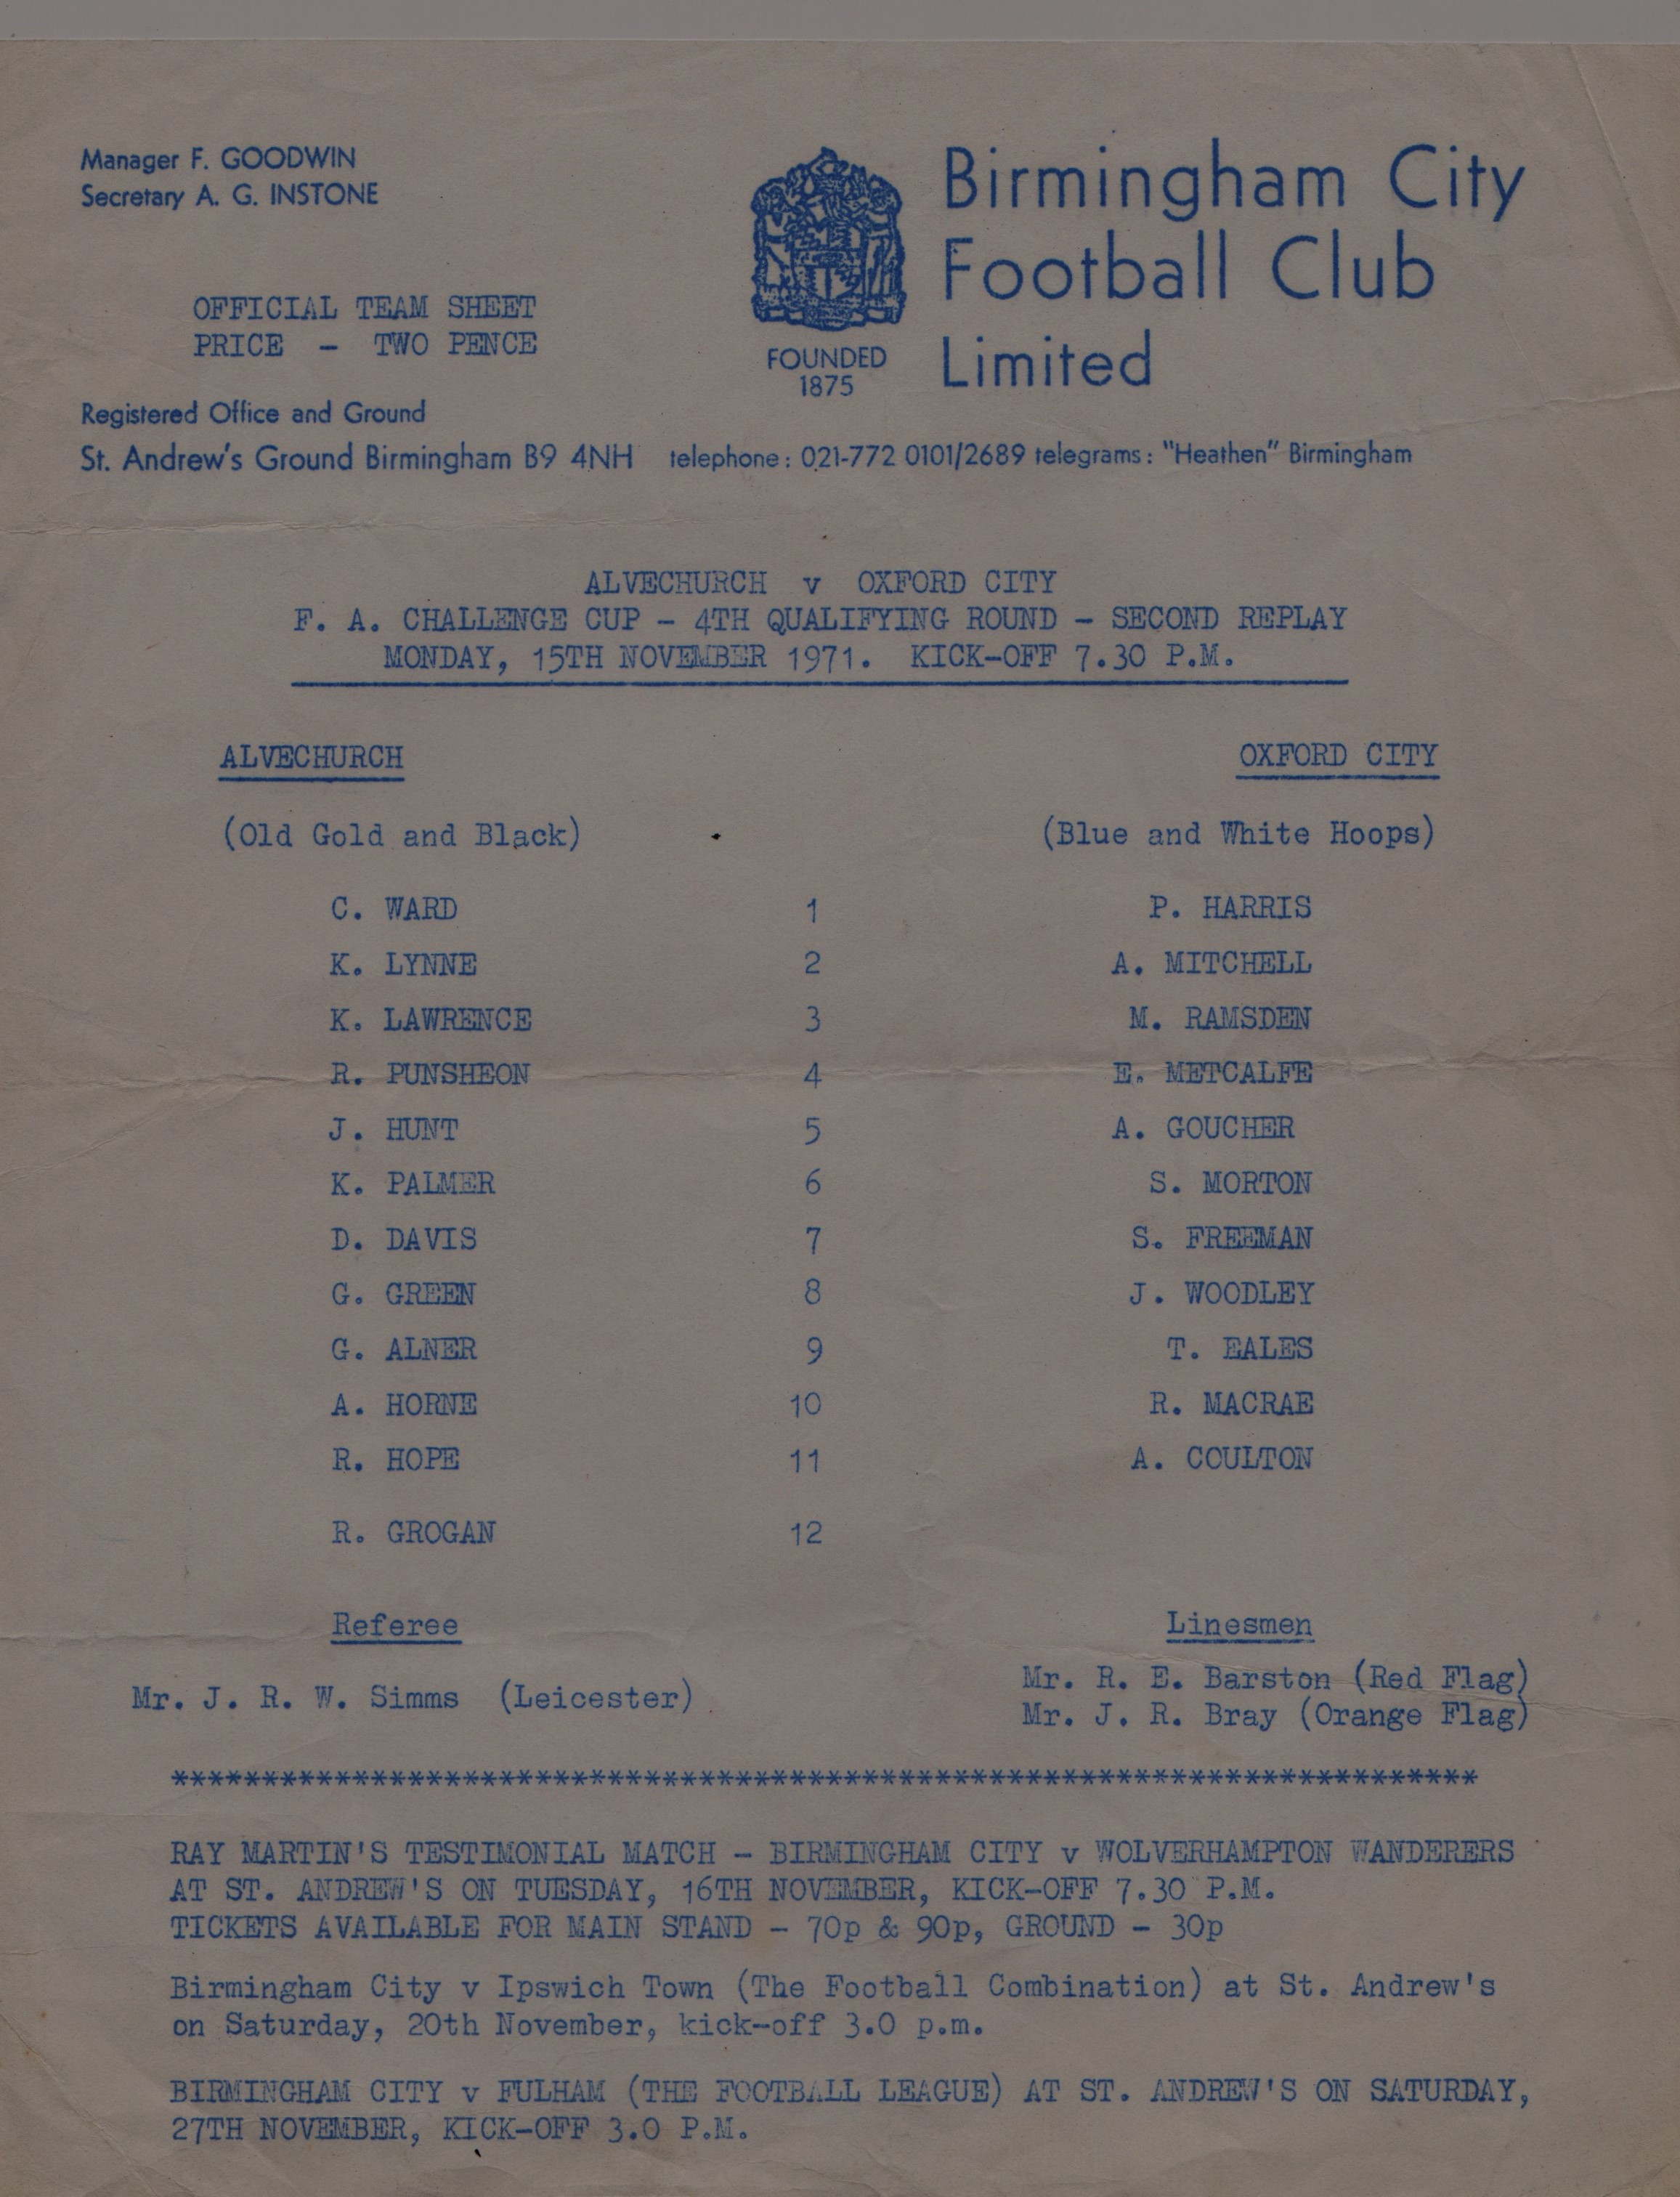 1971/72 F.A. CUP 4TH QR 2ND REPLAY ALVECHURCH V OXFORD CITY @ BIRMINGHAM CITY SINGLE SHEET